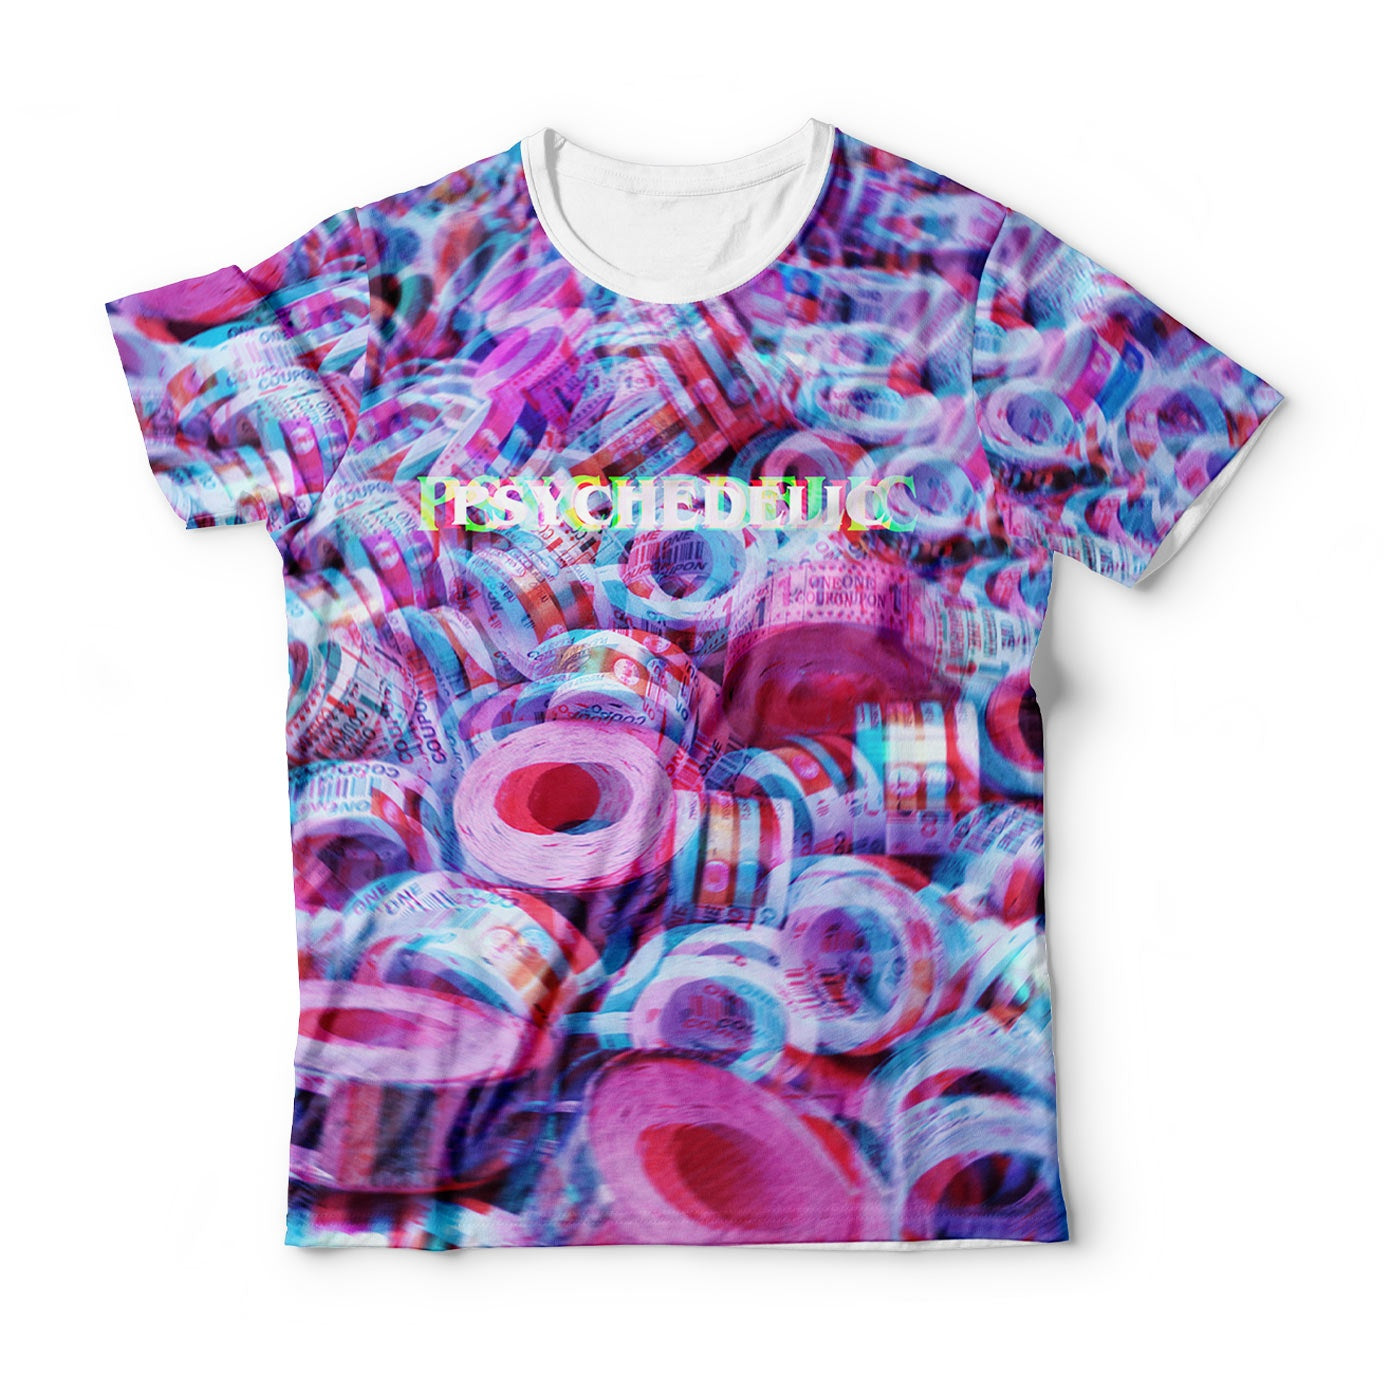 Psychedelic Flower' Kids' Longsleeve Shirt